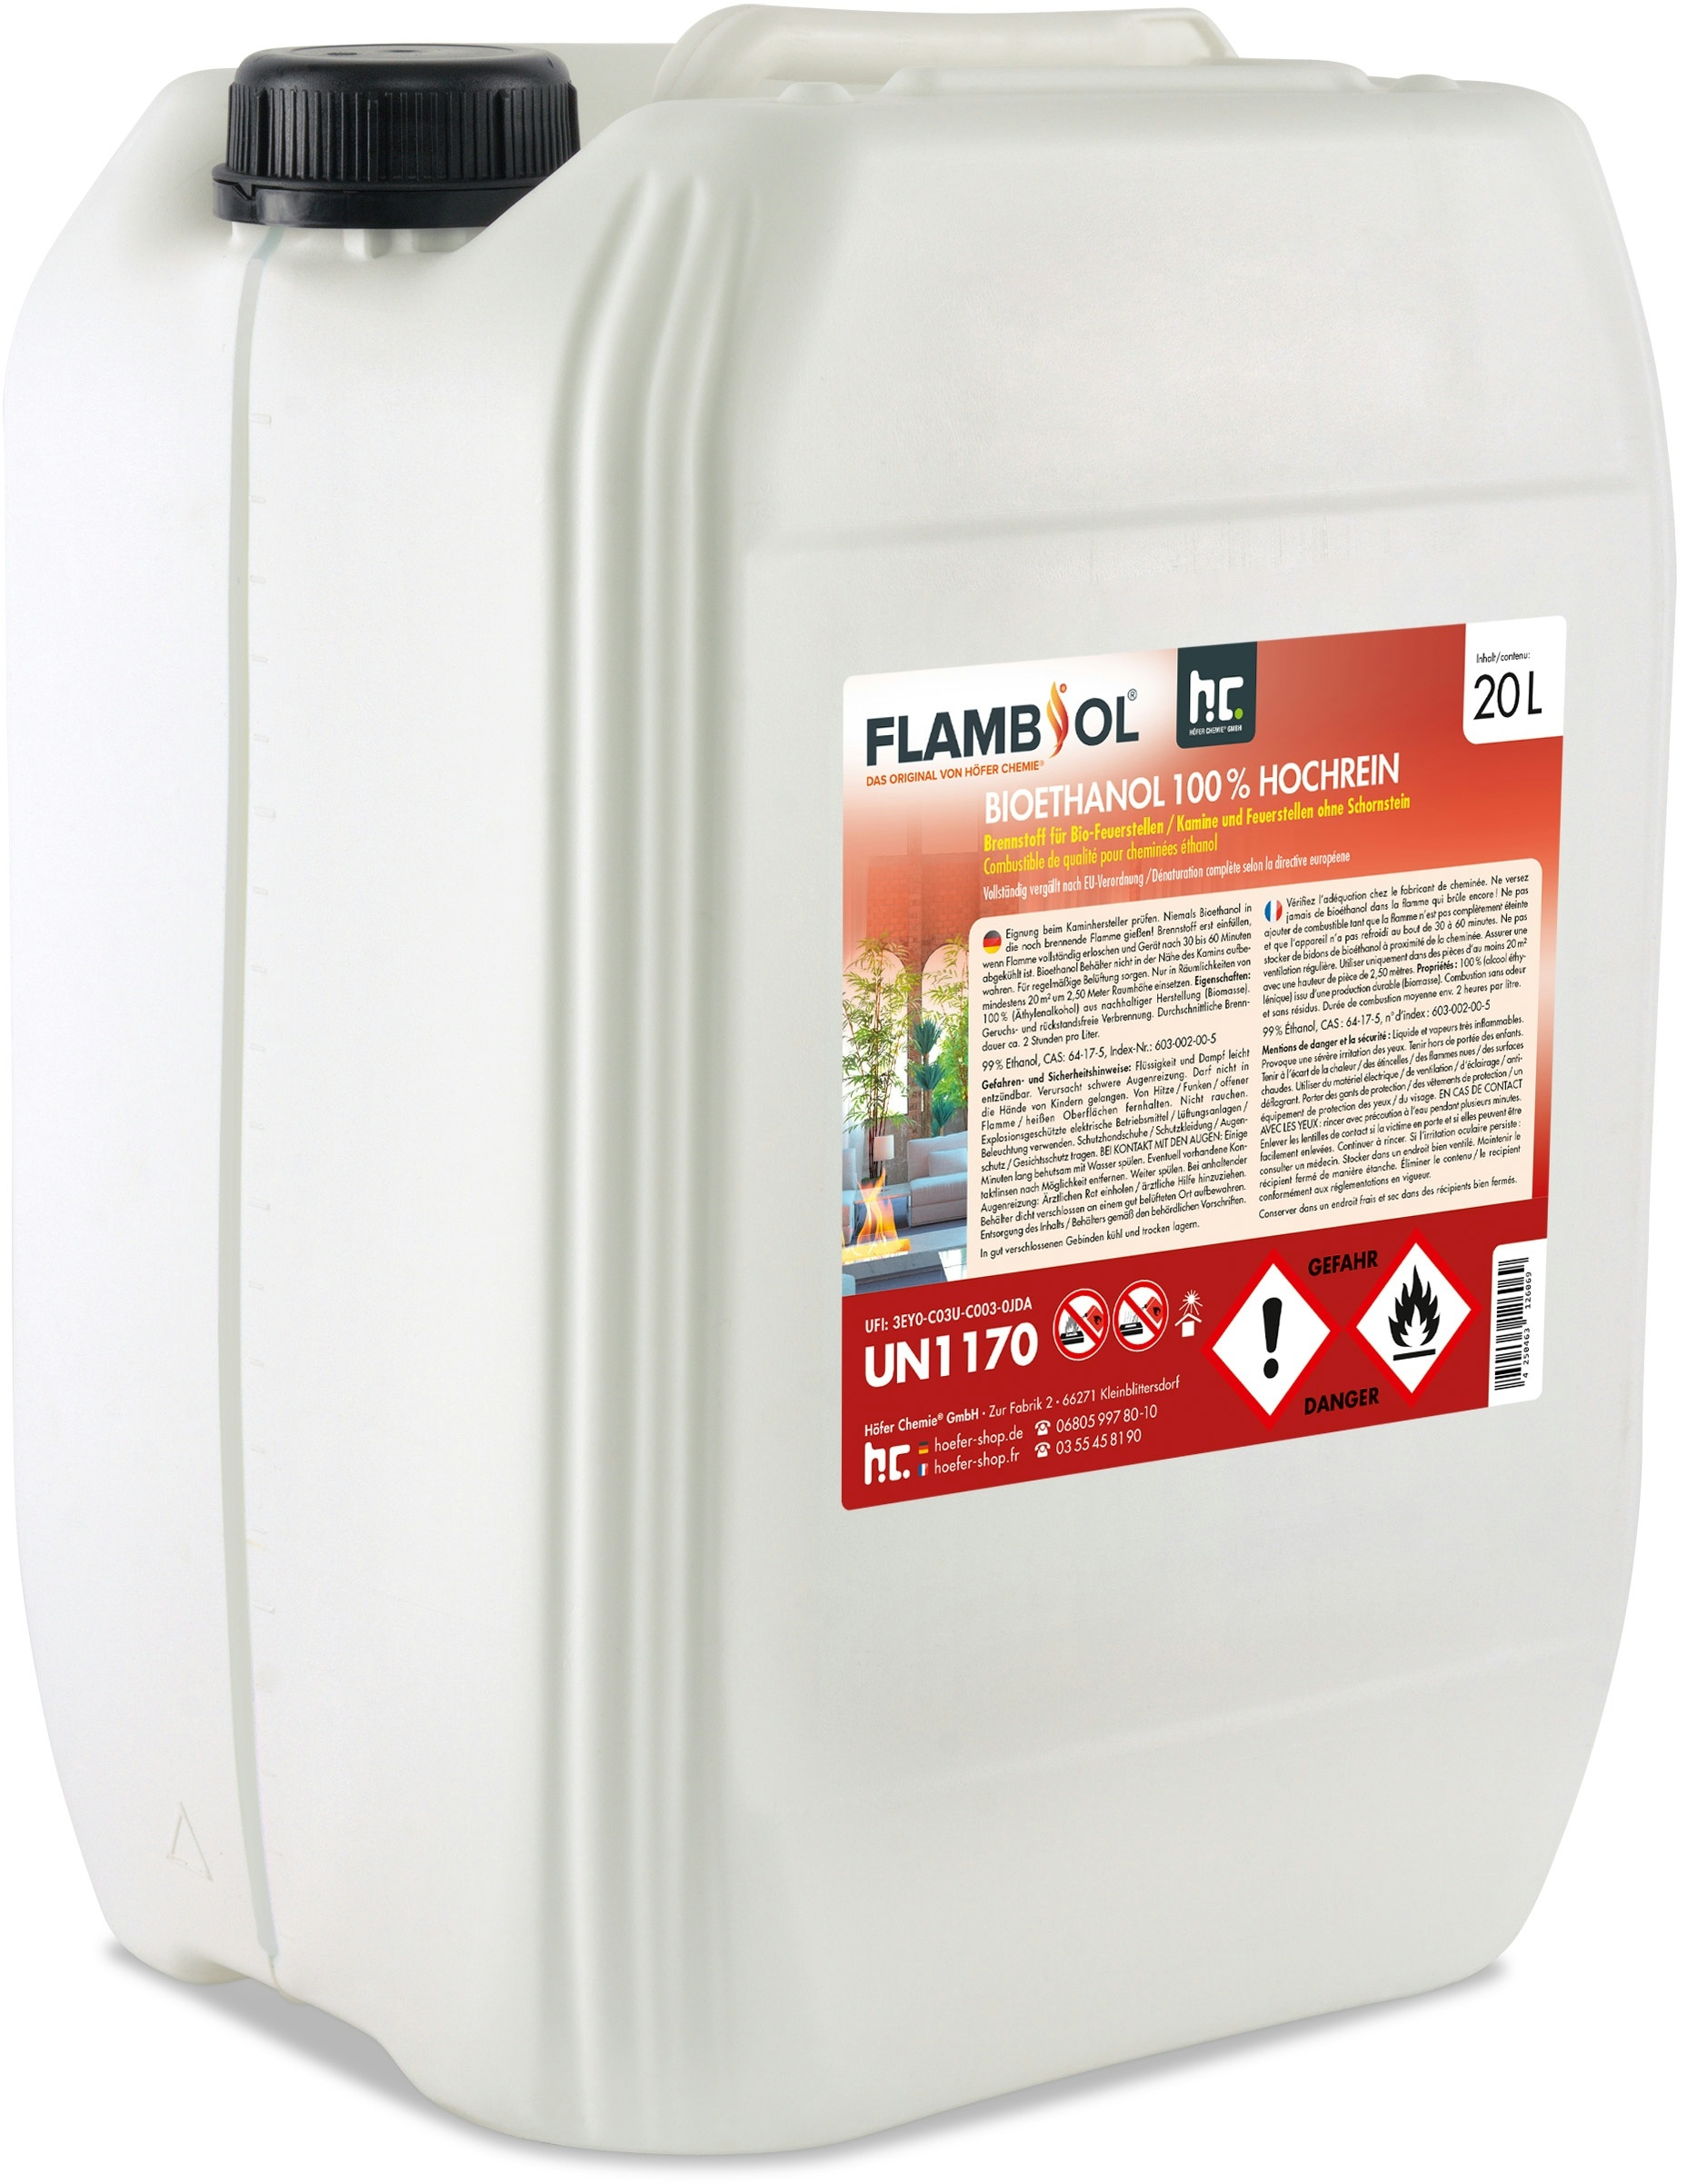 1 x 20 Liter FLAMBIOL® Bioethanol 100% Hochrein